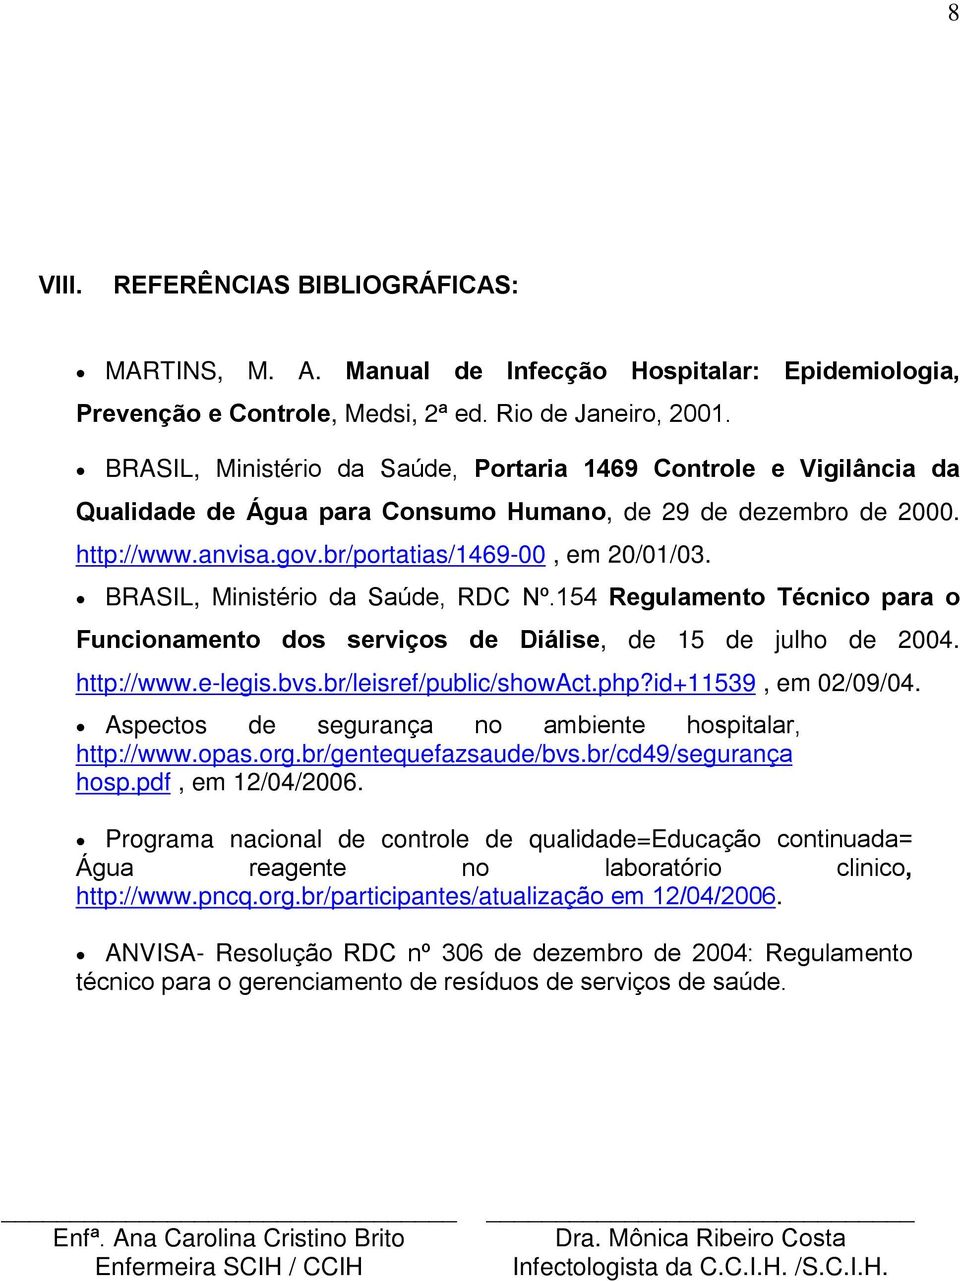 BRASIL, Ministério da Saúde, RDC Nº.154 Regulamento Técnico para o Funcionamento dos serviços de Diálise, de 15 de julho de 2004. http://www.e-legis.bvs.br/leisref/public/showact.php?